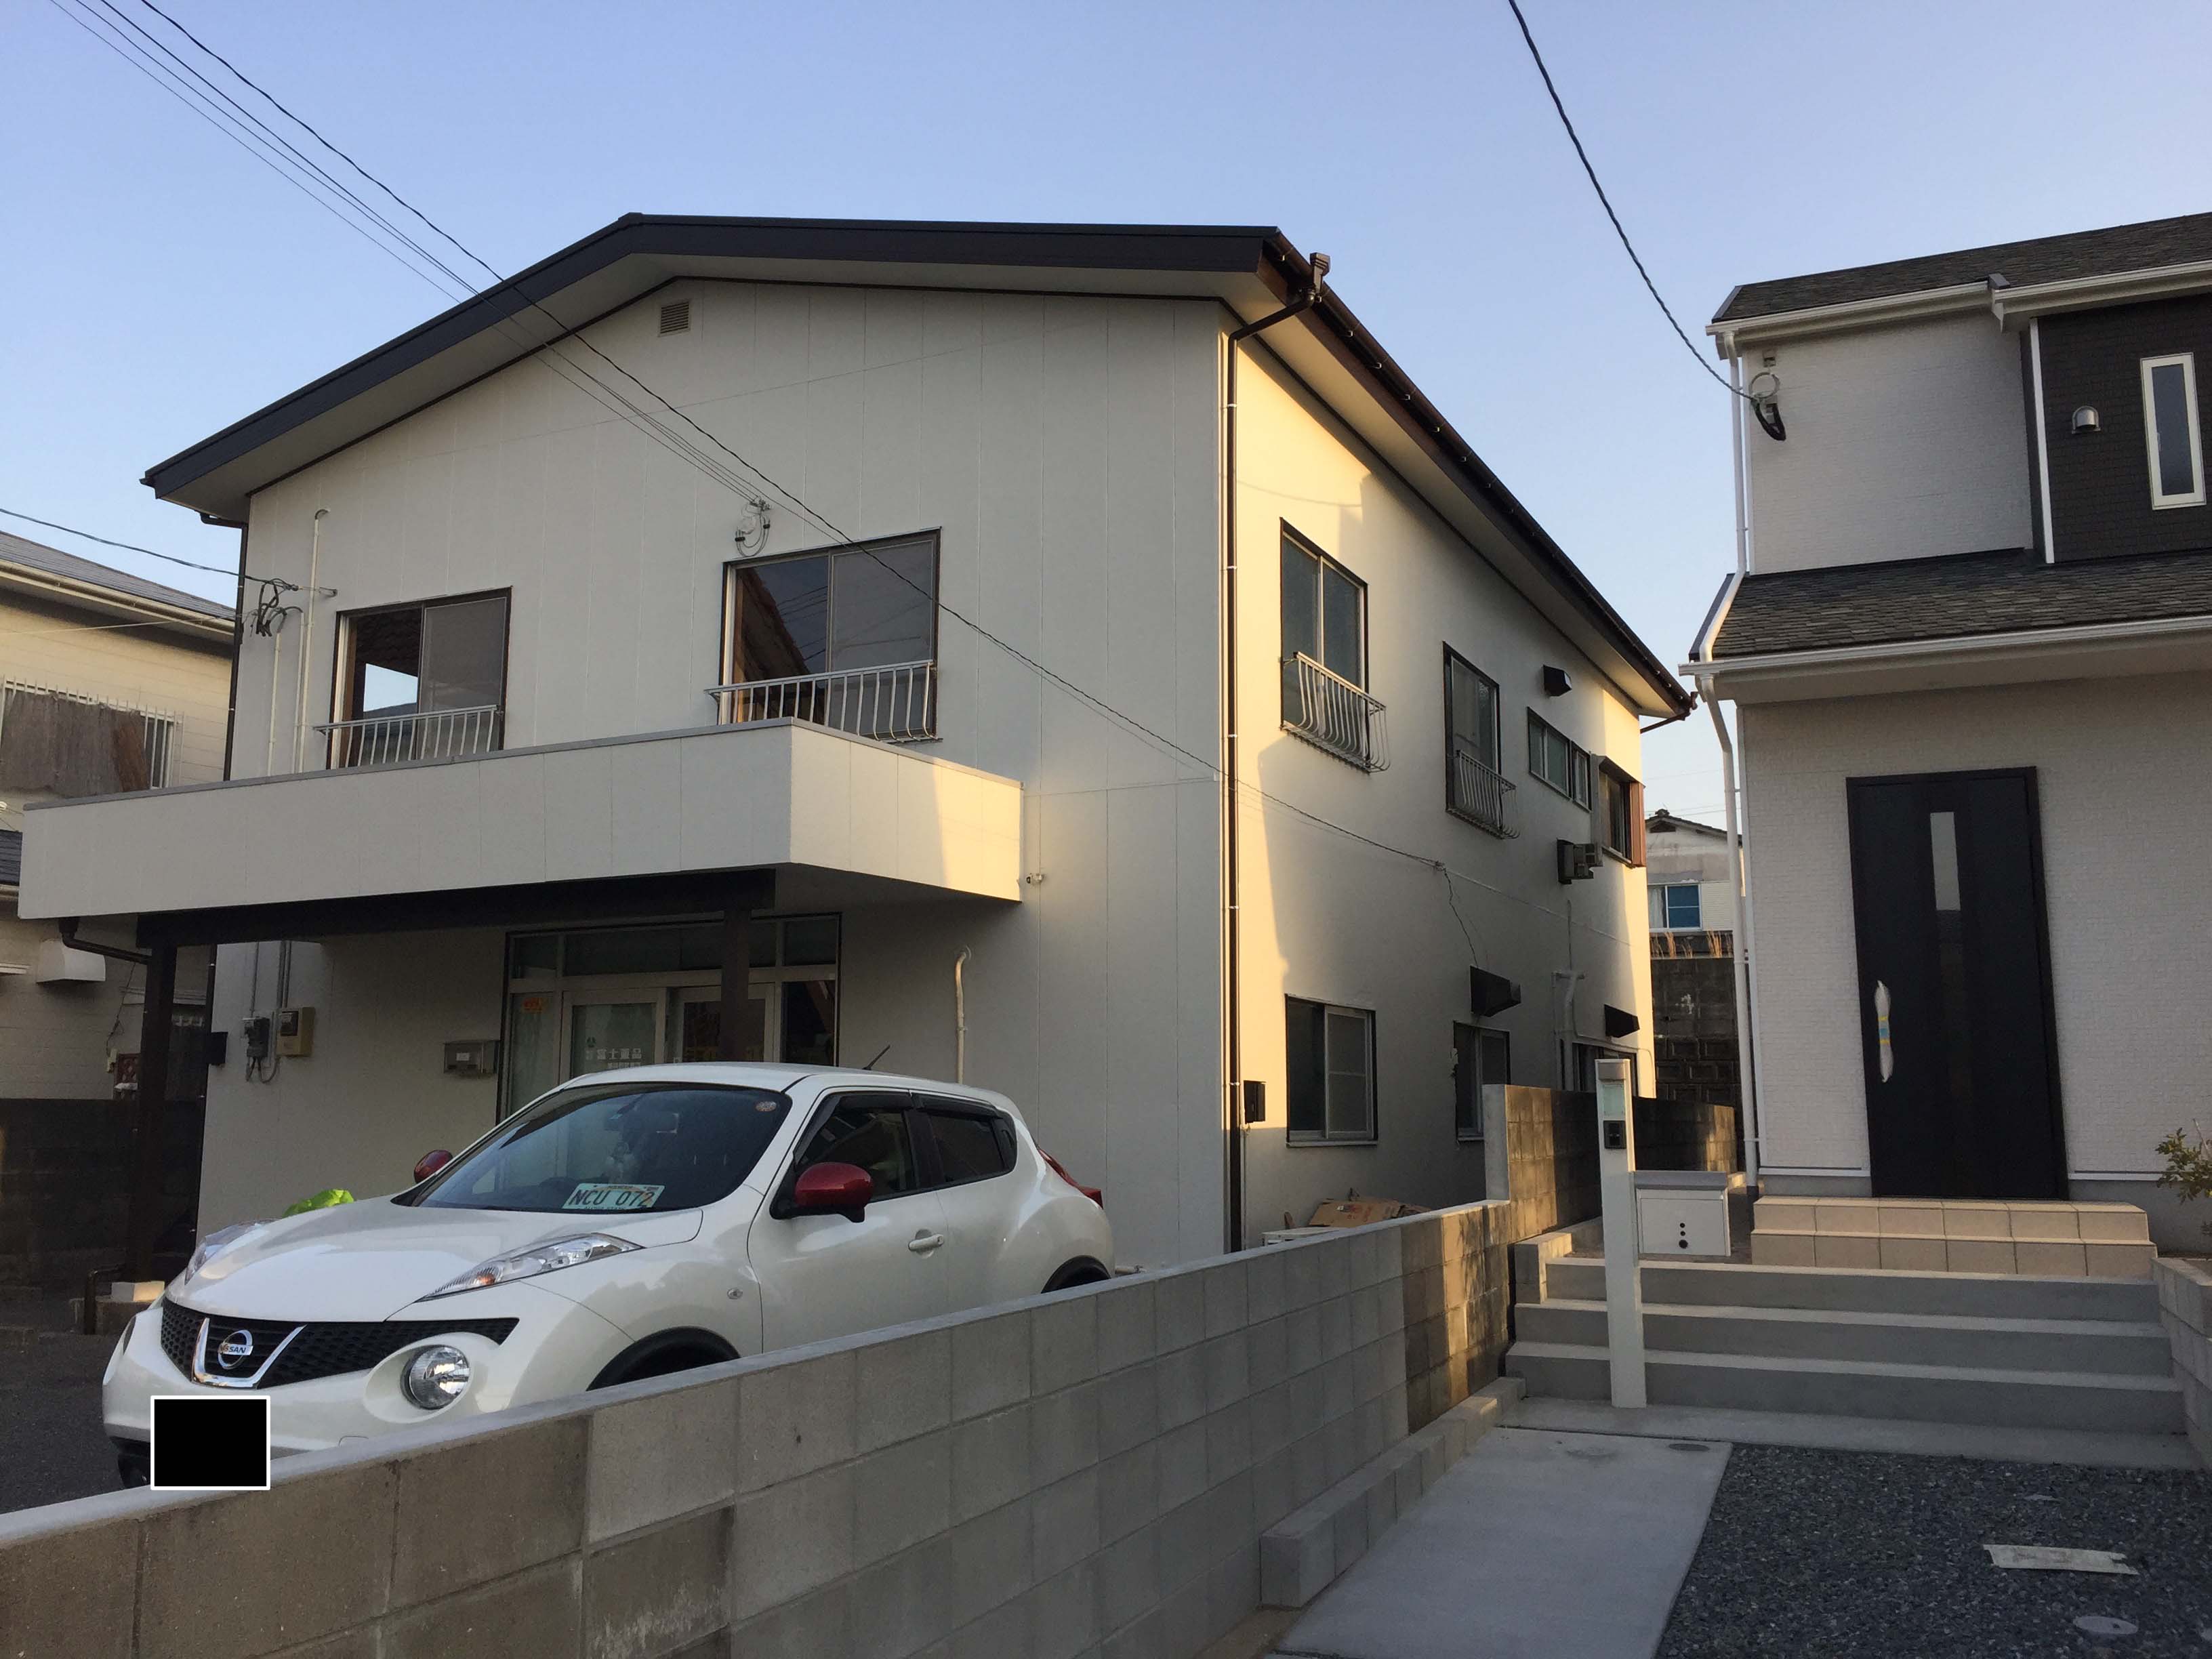 福岡市西区 横浜house ４ldk シェア可能な賃貸物件を探すならルームシェア Info